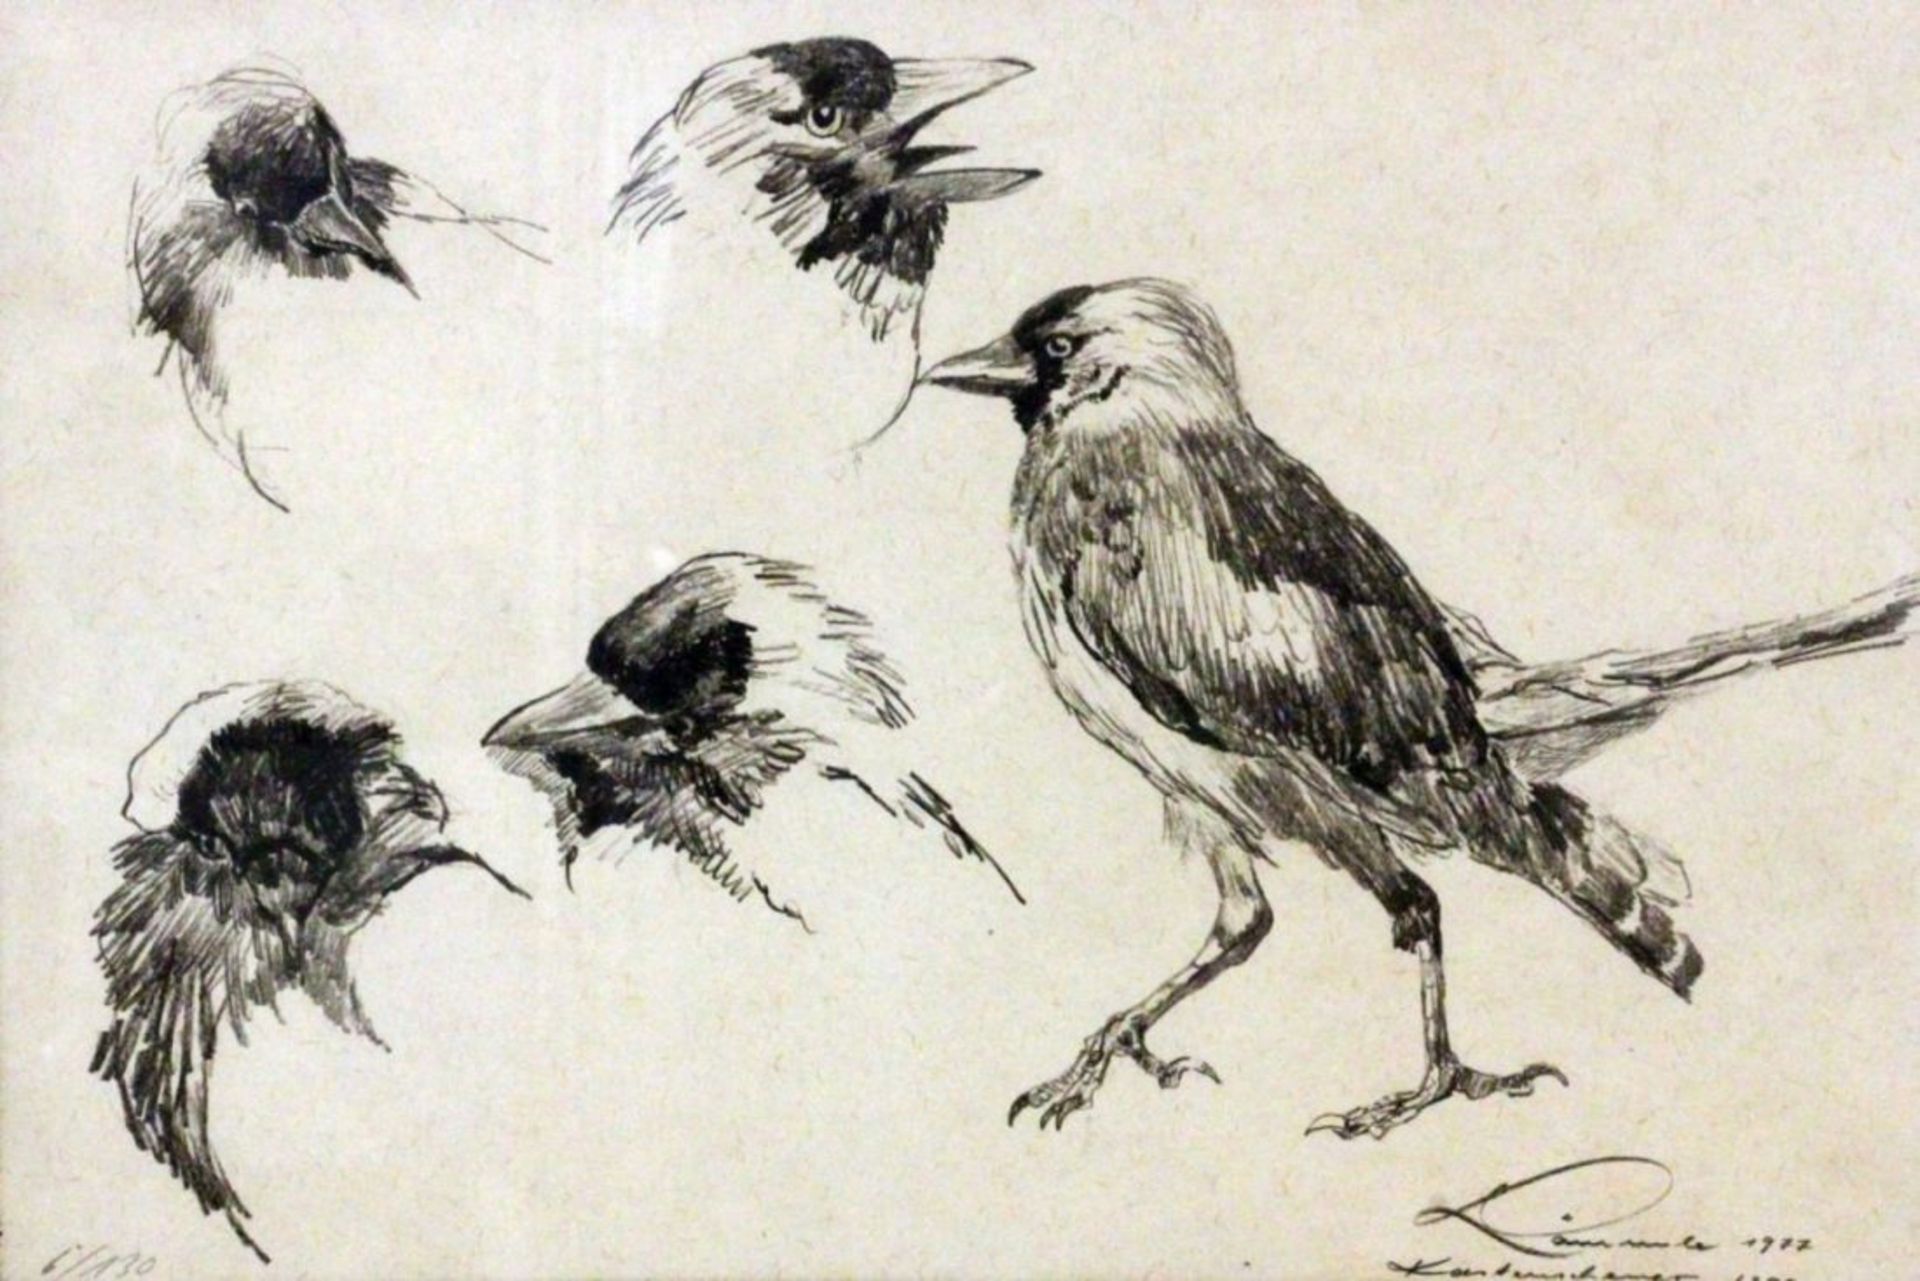 LÄMMLE, WOLFGANGStuttgart 1941 - 2019 Australien Studie mit Singvögeln. Litho, signiert und dat.: